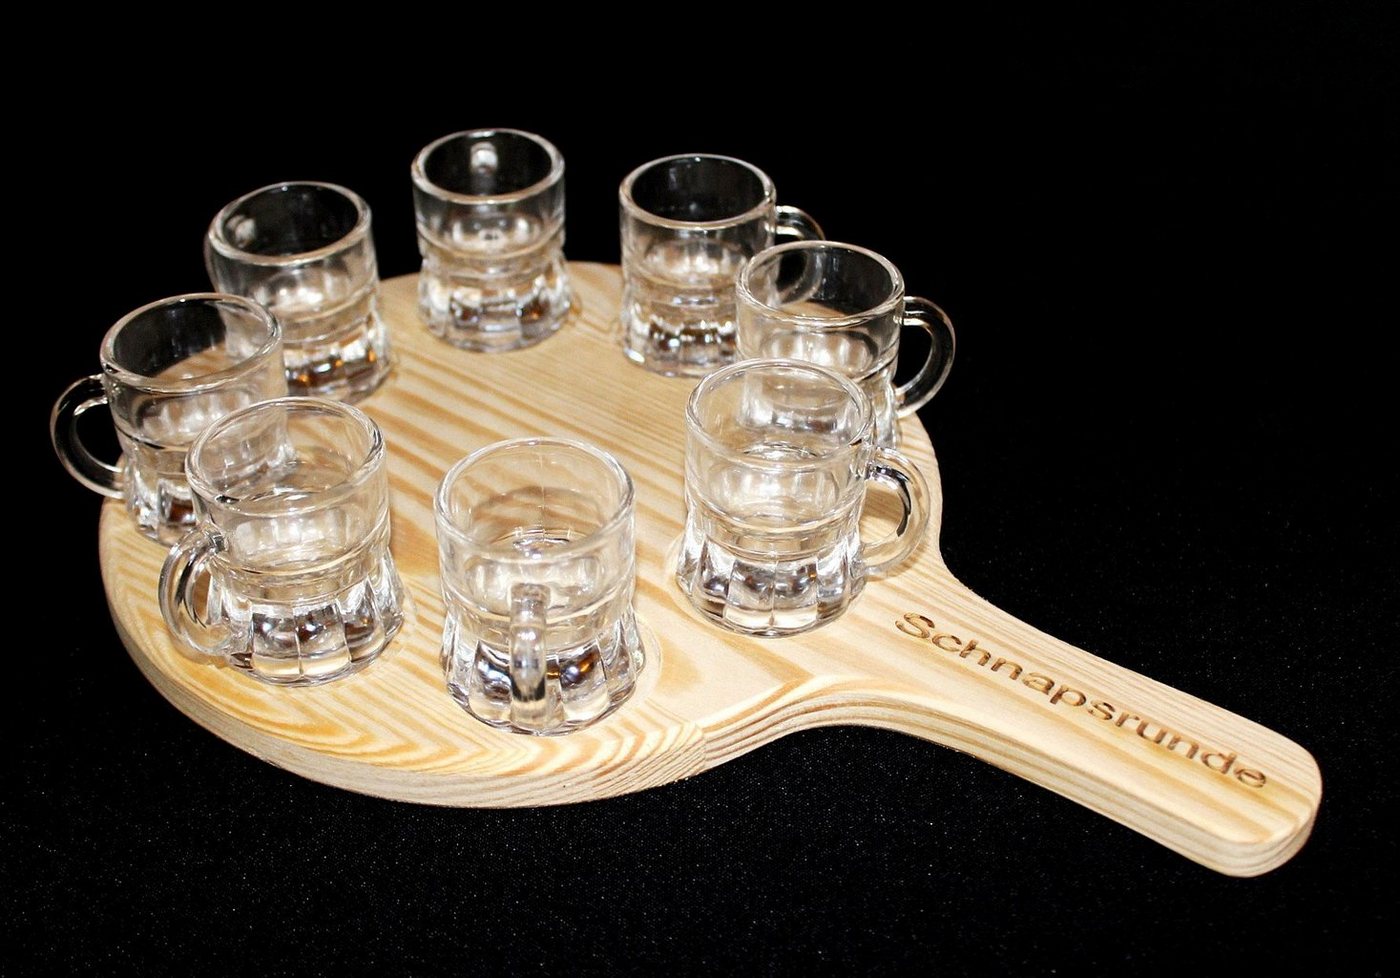 DanDiBo Schnapsglas Schnapsrunde 20 cm mit Gravur und 8 Gläser Schnapsbrett Leiste Schnapslatte, Holz von DanDiBo